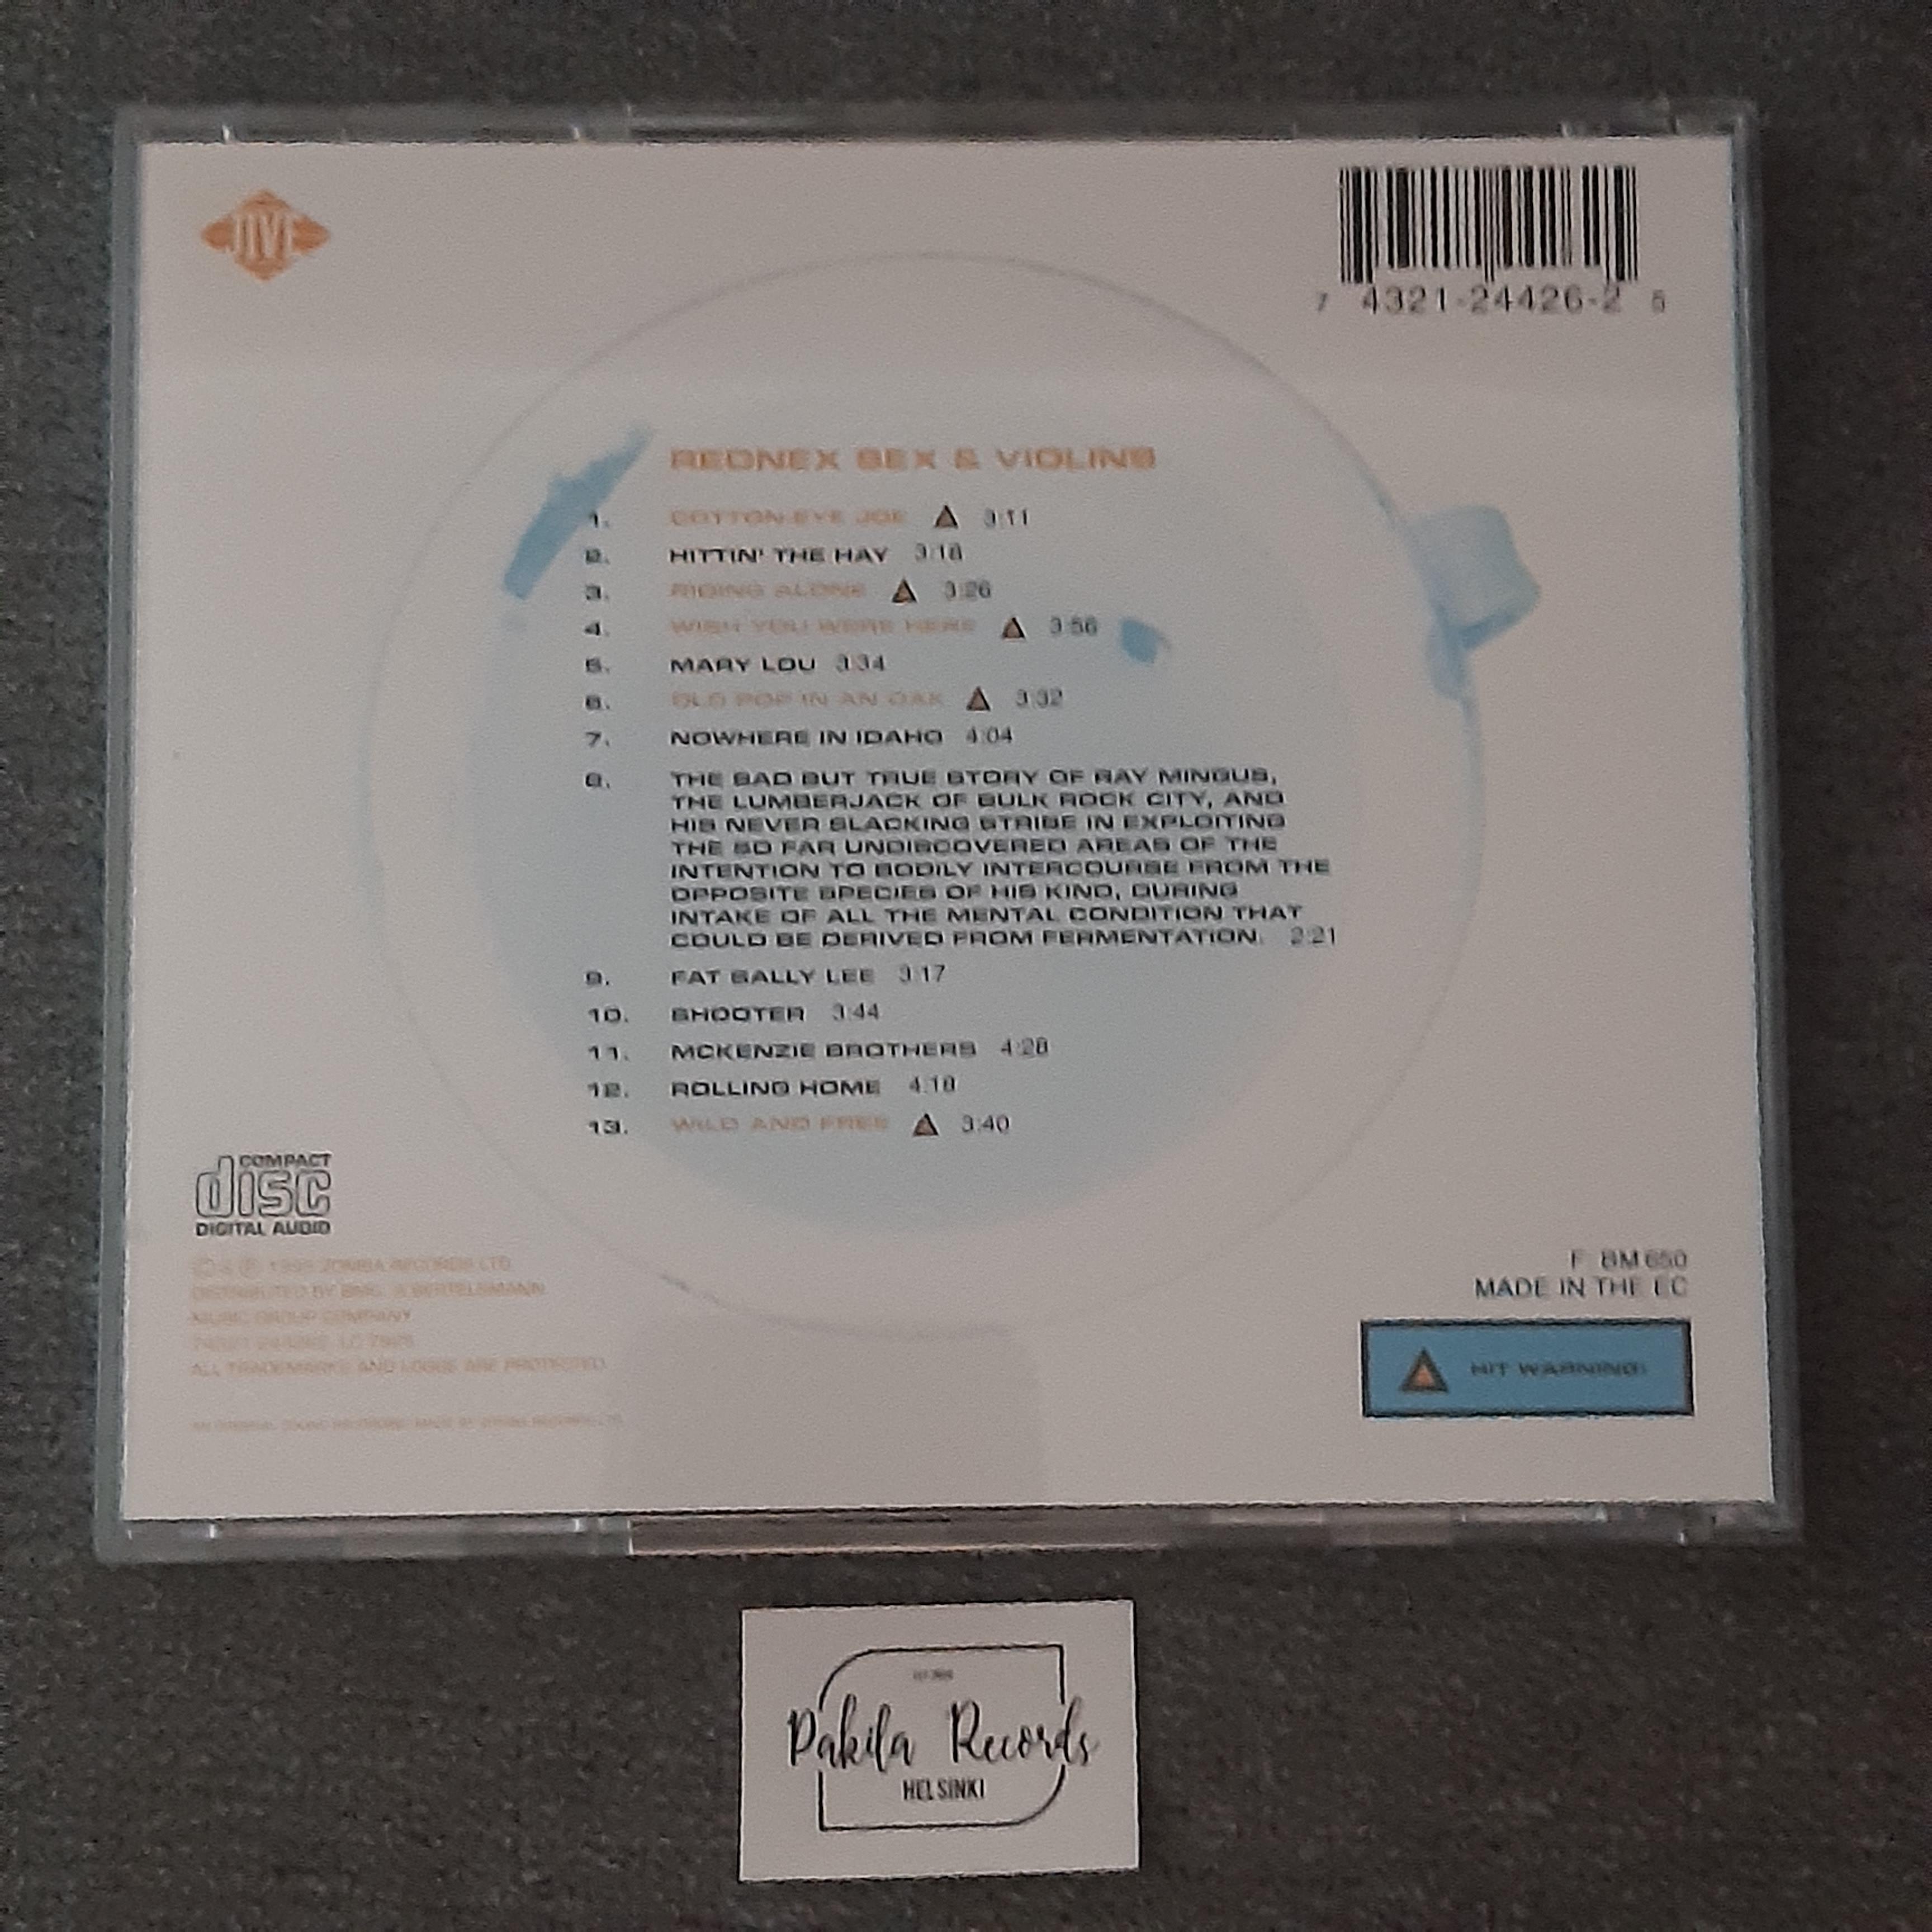 Rednex - Sex & Violins - CD (käytetty)